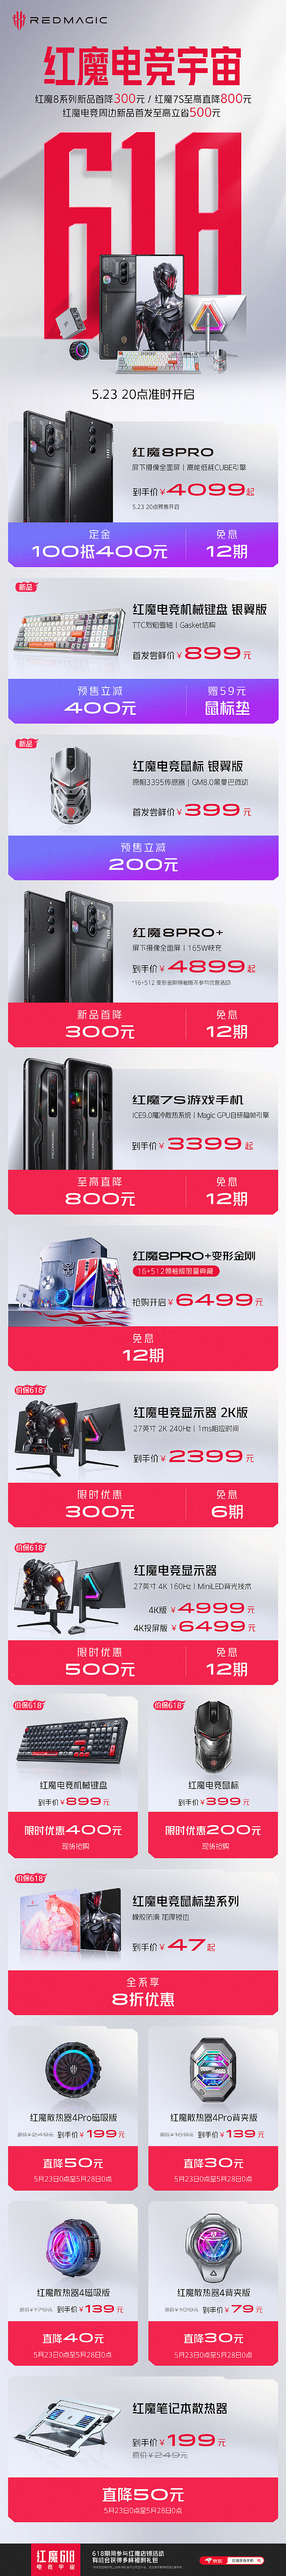 红魔游戏手机 618：红魔 8Pro系列首降 300 元，红魔 7S 最高直降 800 元 - 1